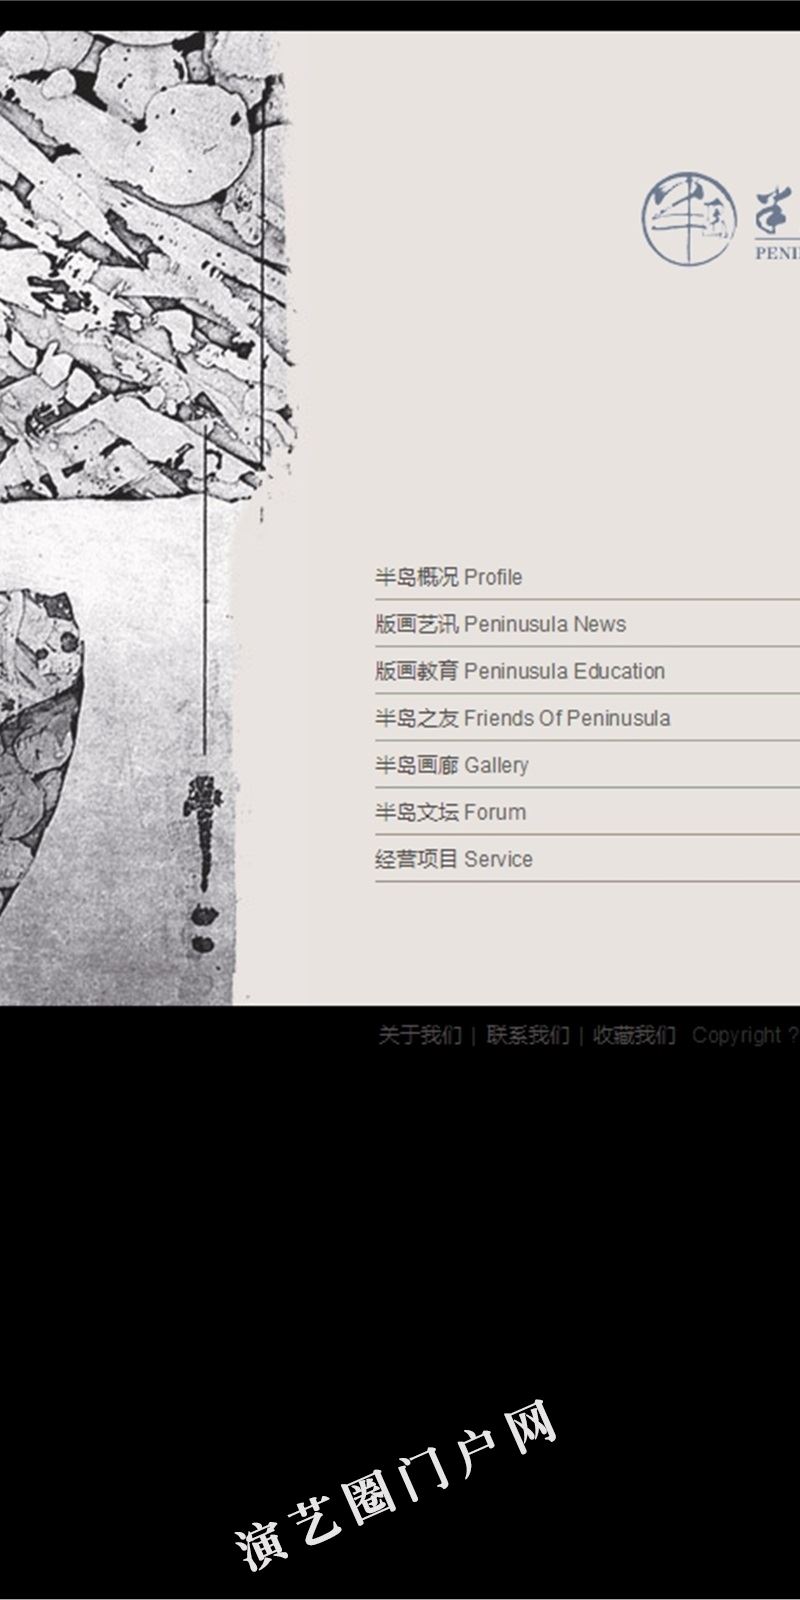 上海半岛版画工作室-版画策划与展览_丝网版画截图